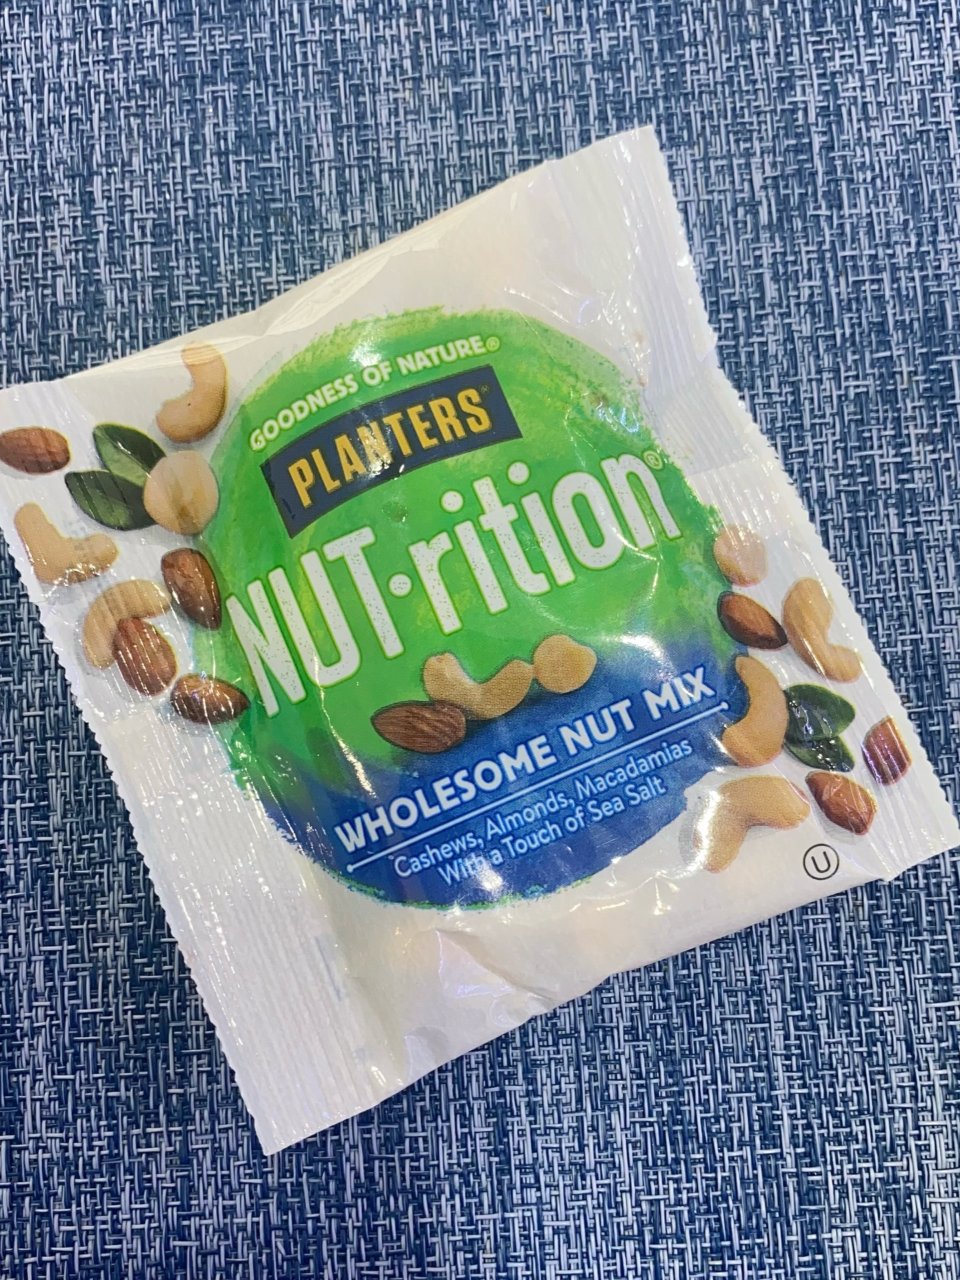 NUT-rition 整颗综合坚果 7.5oz 7小包